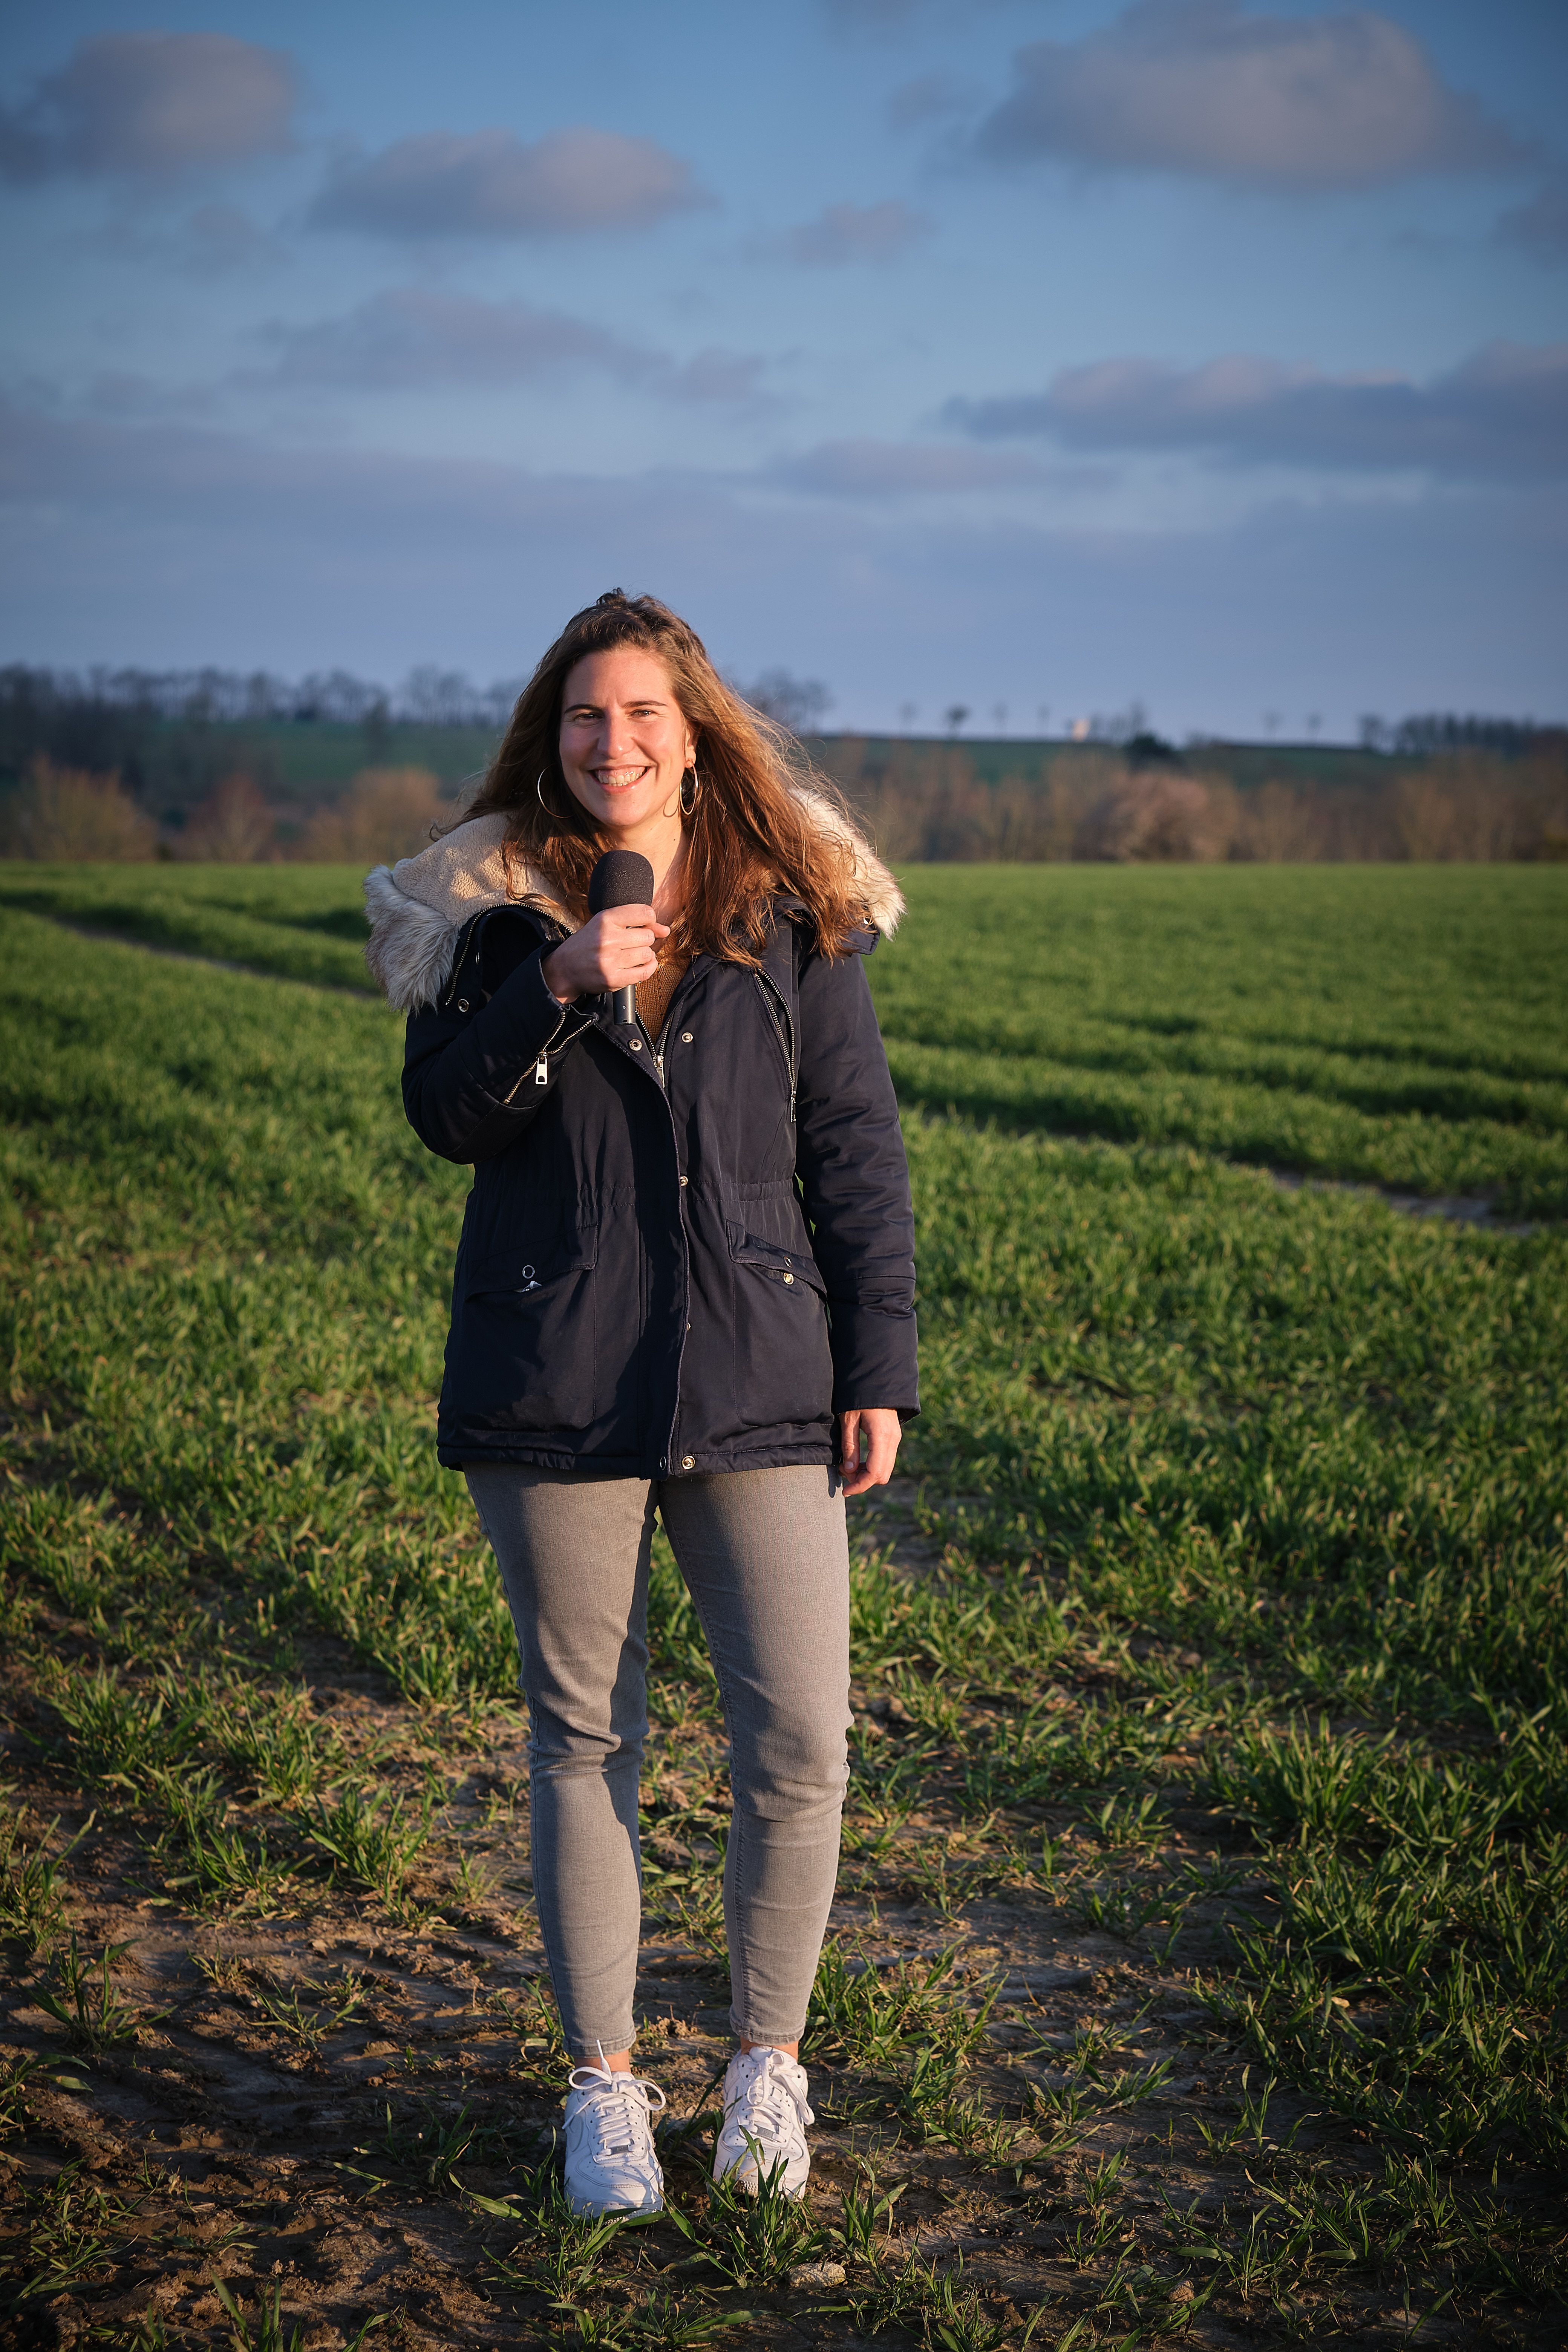 Louise Lesparre : valoriser la diversité de l’agriculture française